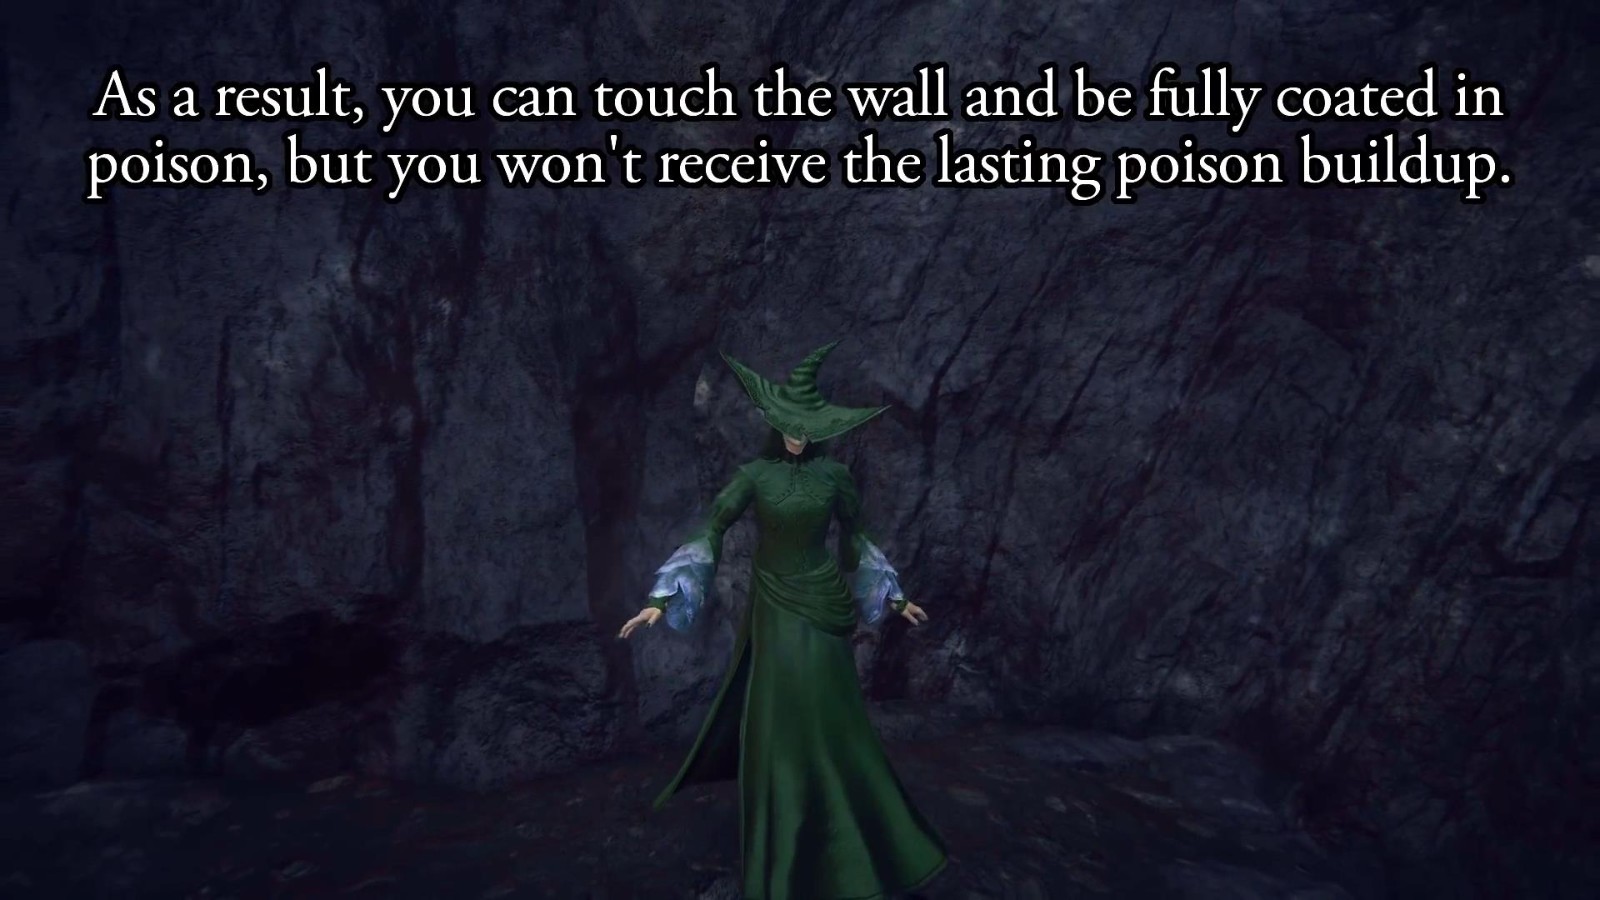 《艾爾登法環》毒牆Bug出現 將玩家瞬間染成綠色